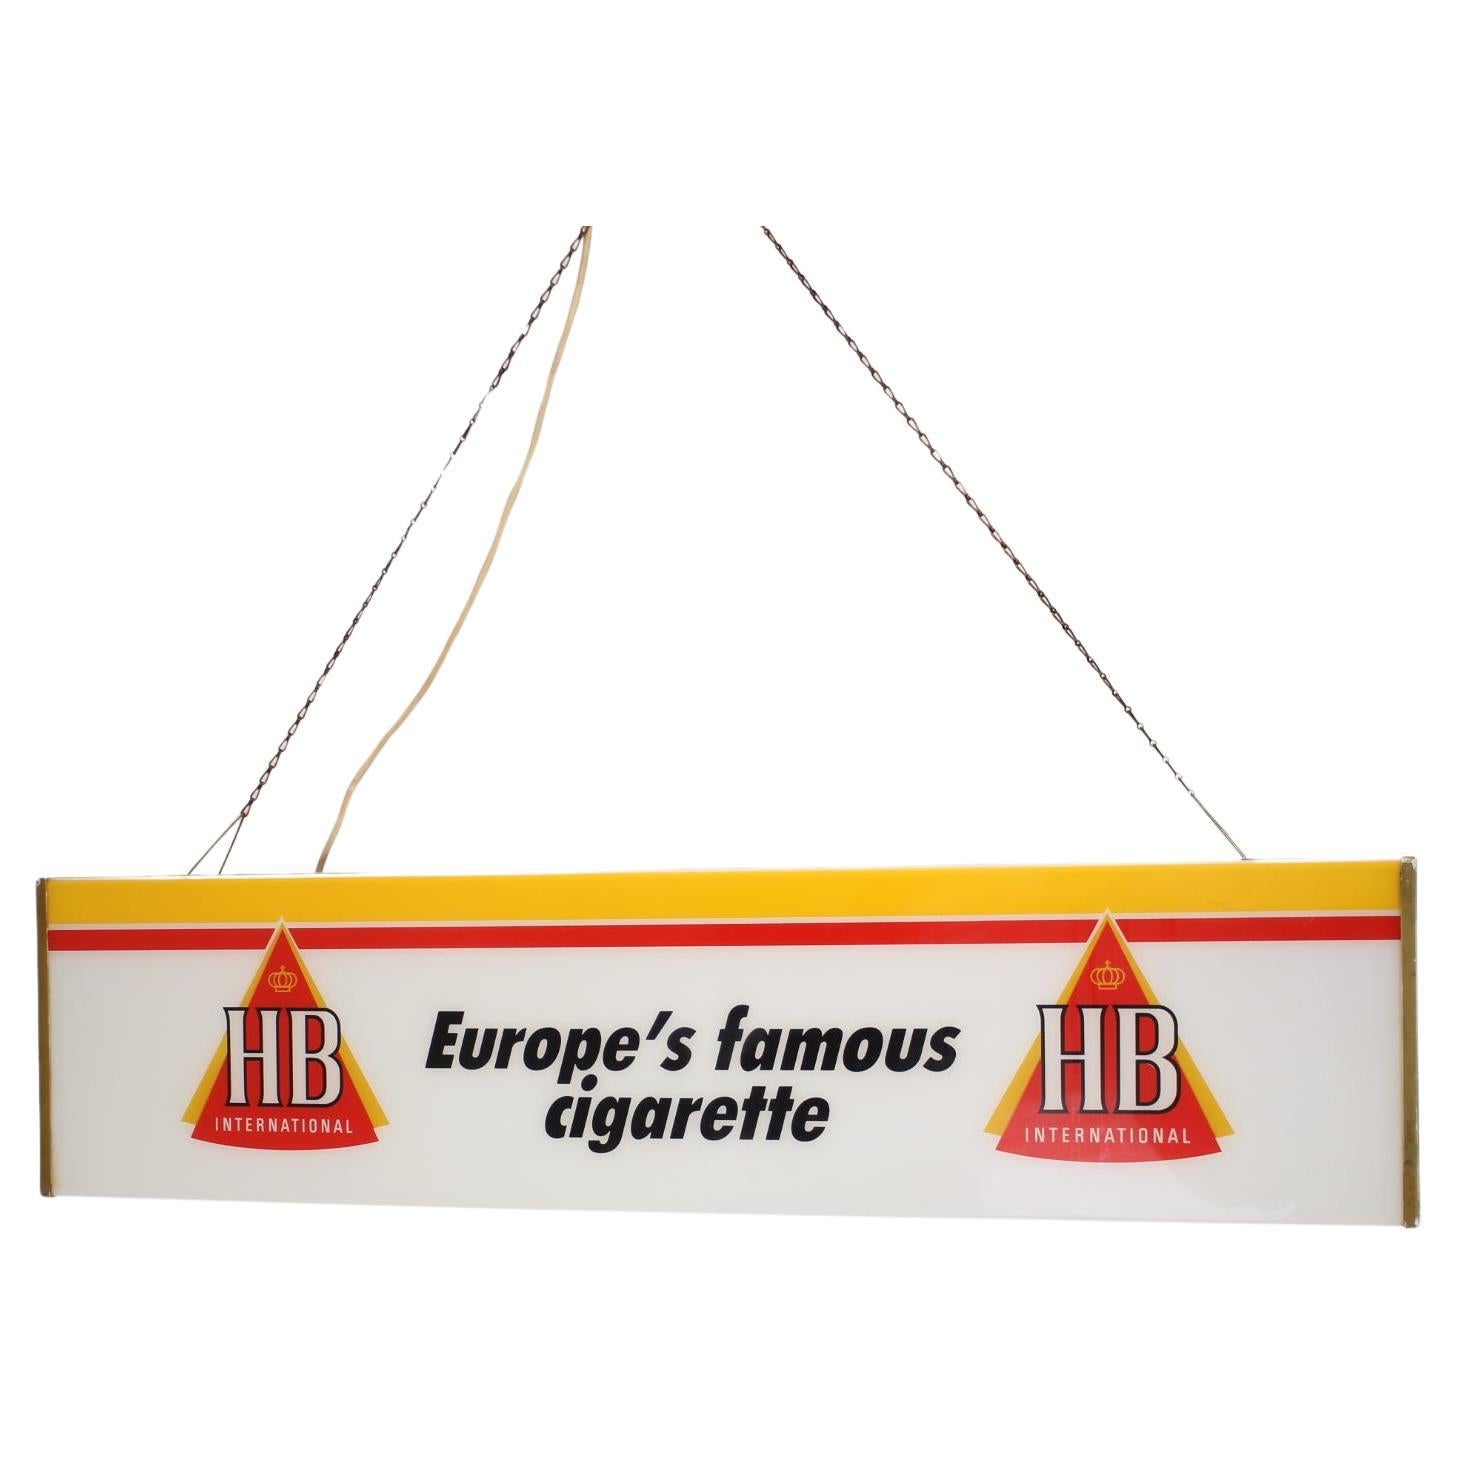 Grand publicitaire éclairé pour les cigarettes HB, 1970 en vente